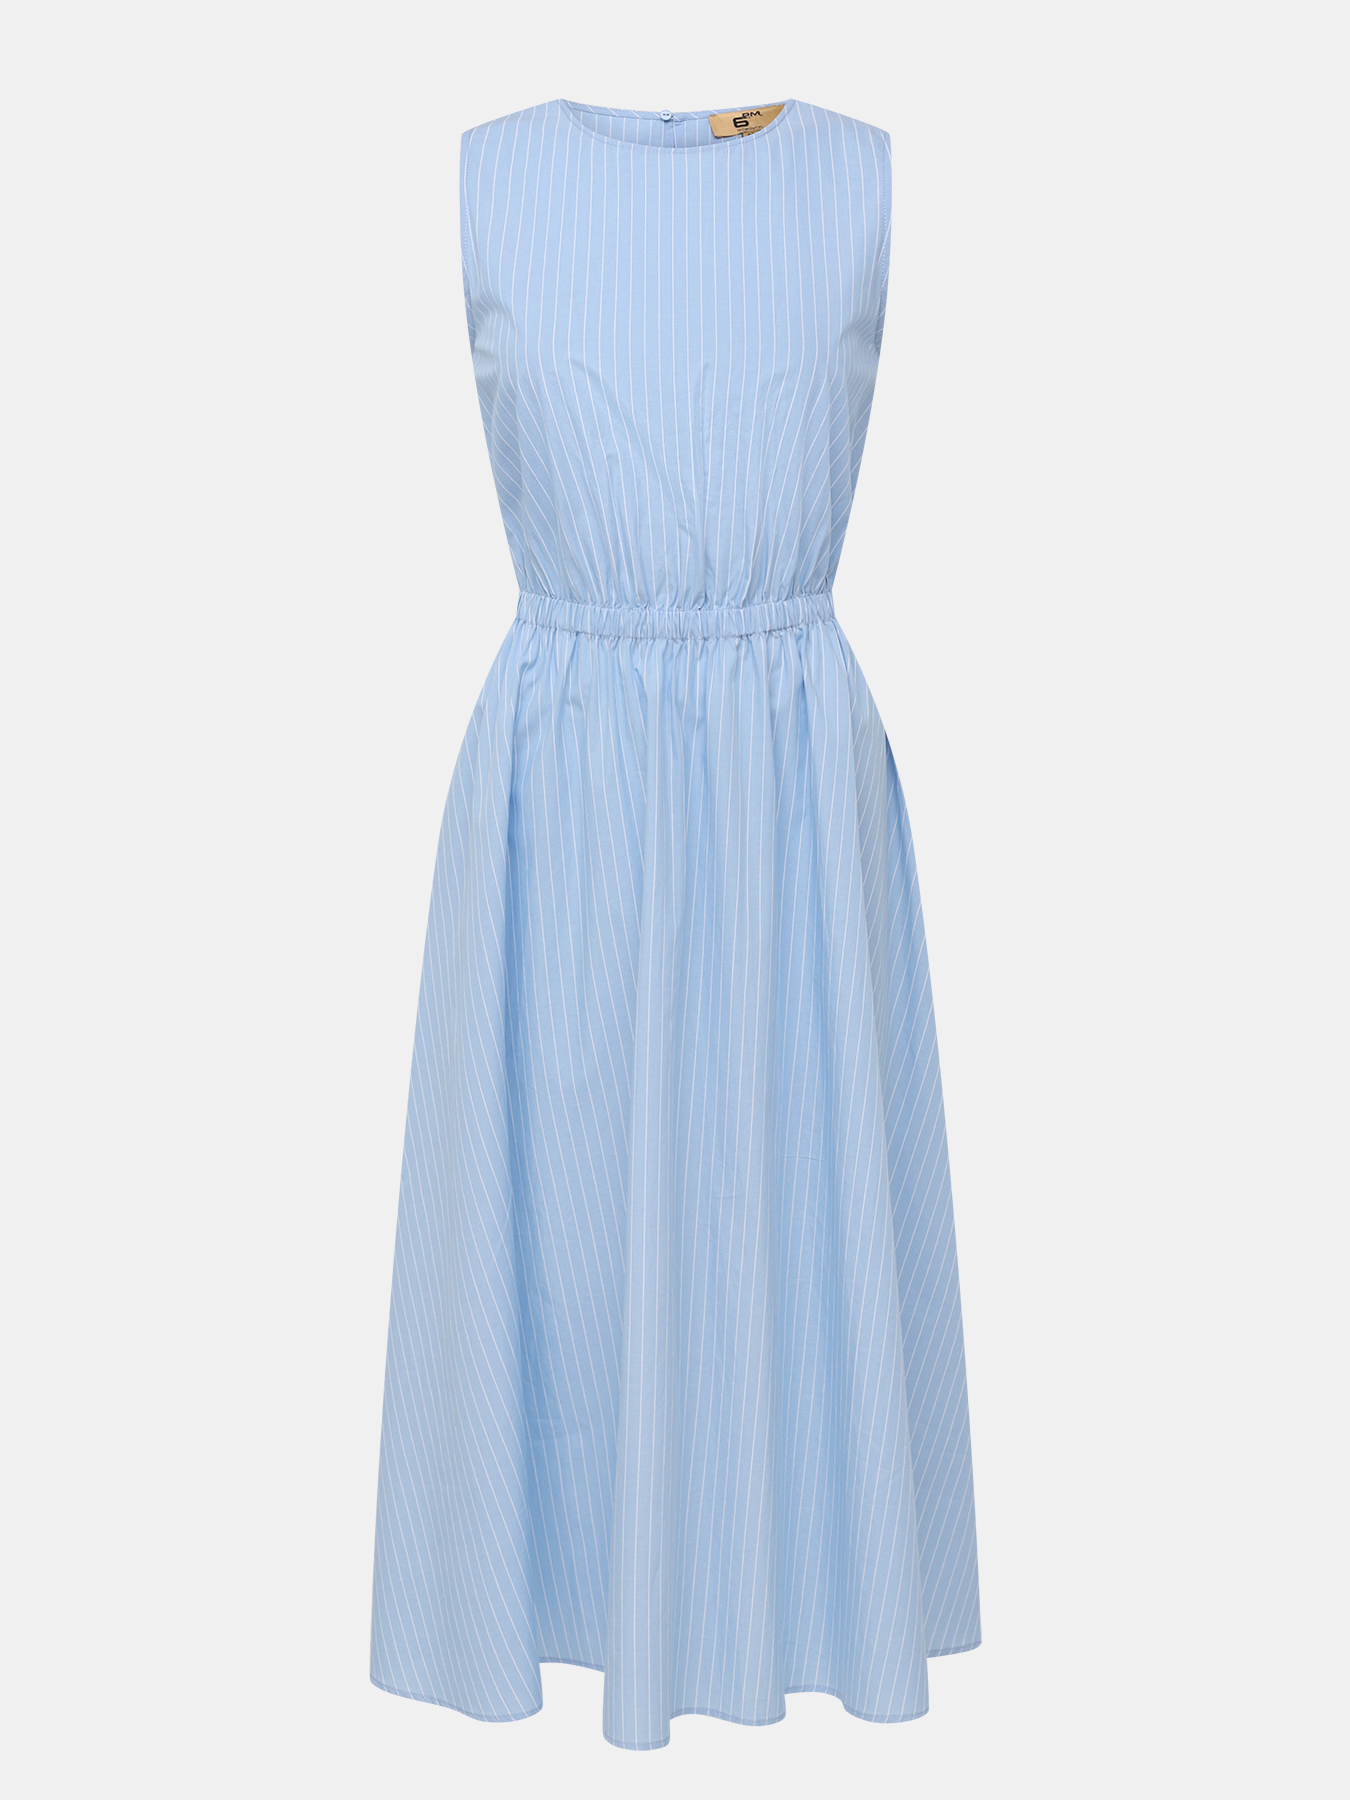 Платье женское 6 P.M. 447901 голубое 50 RU